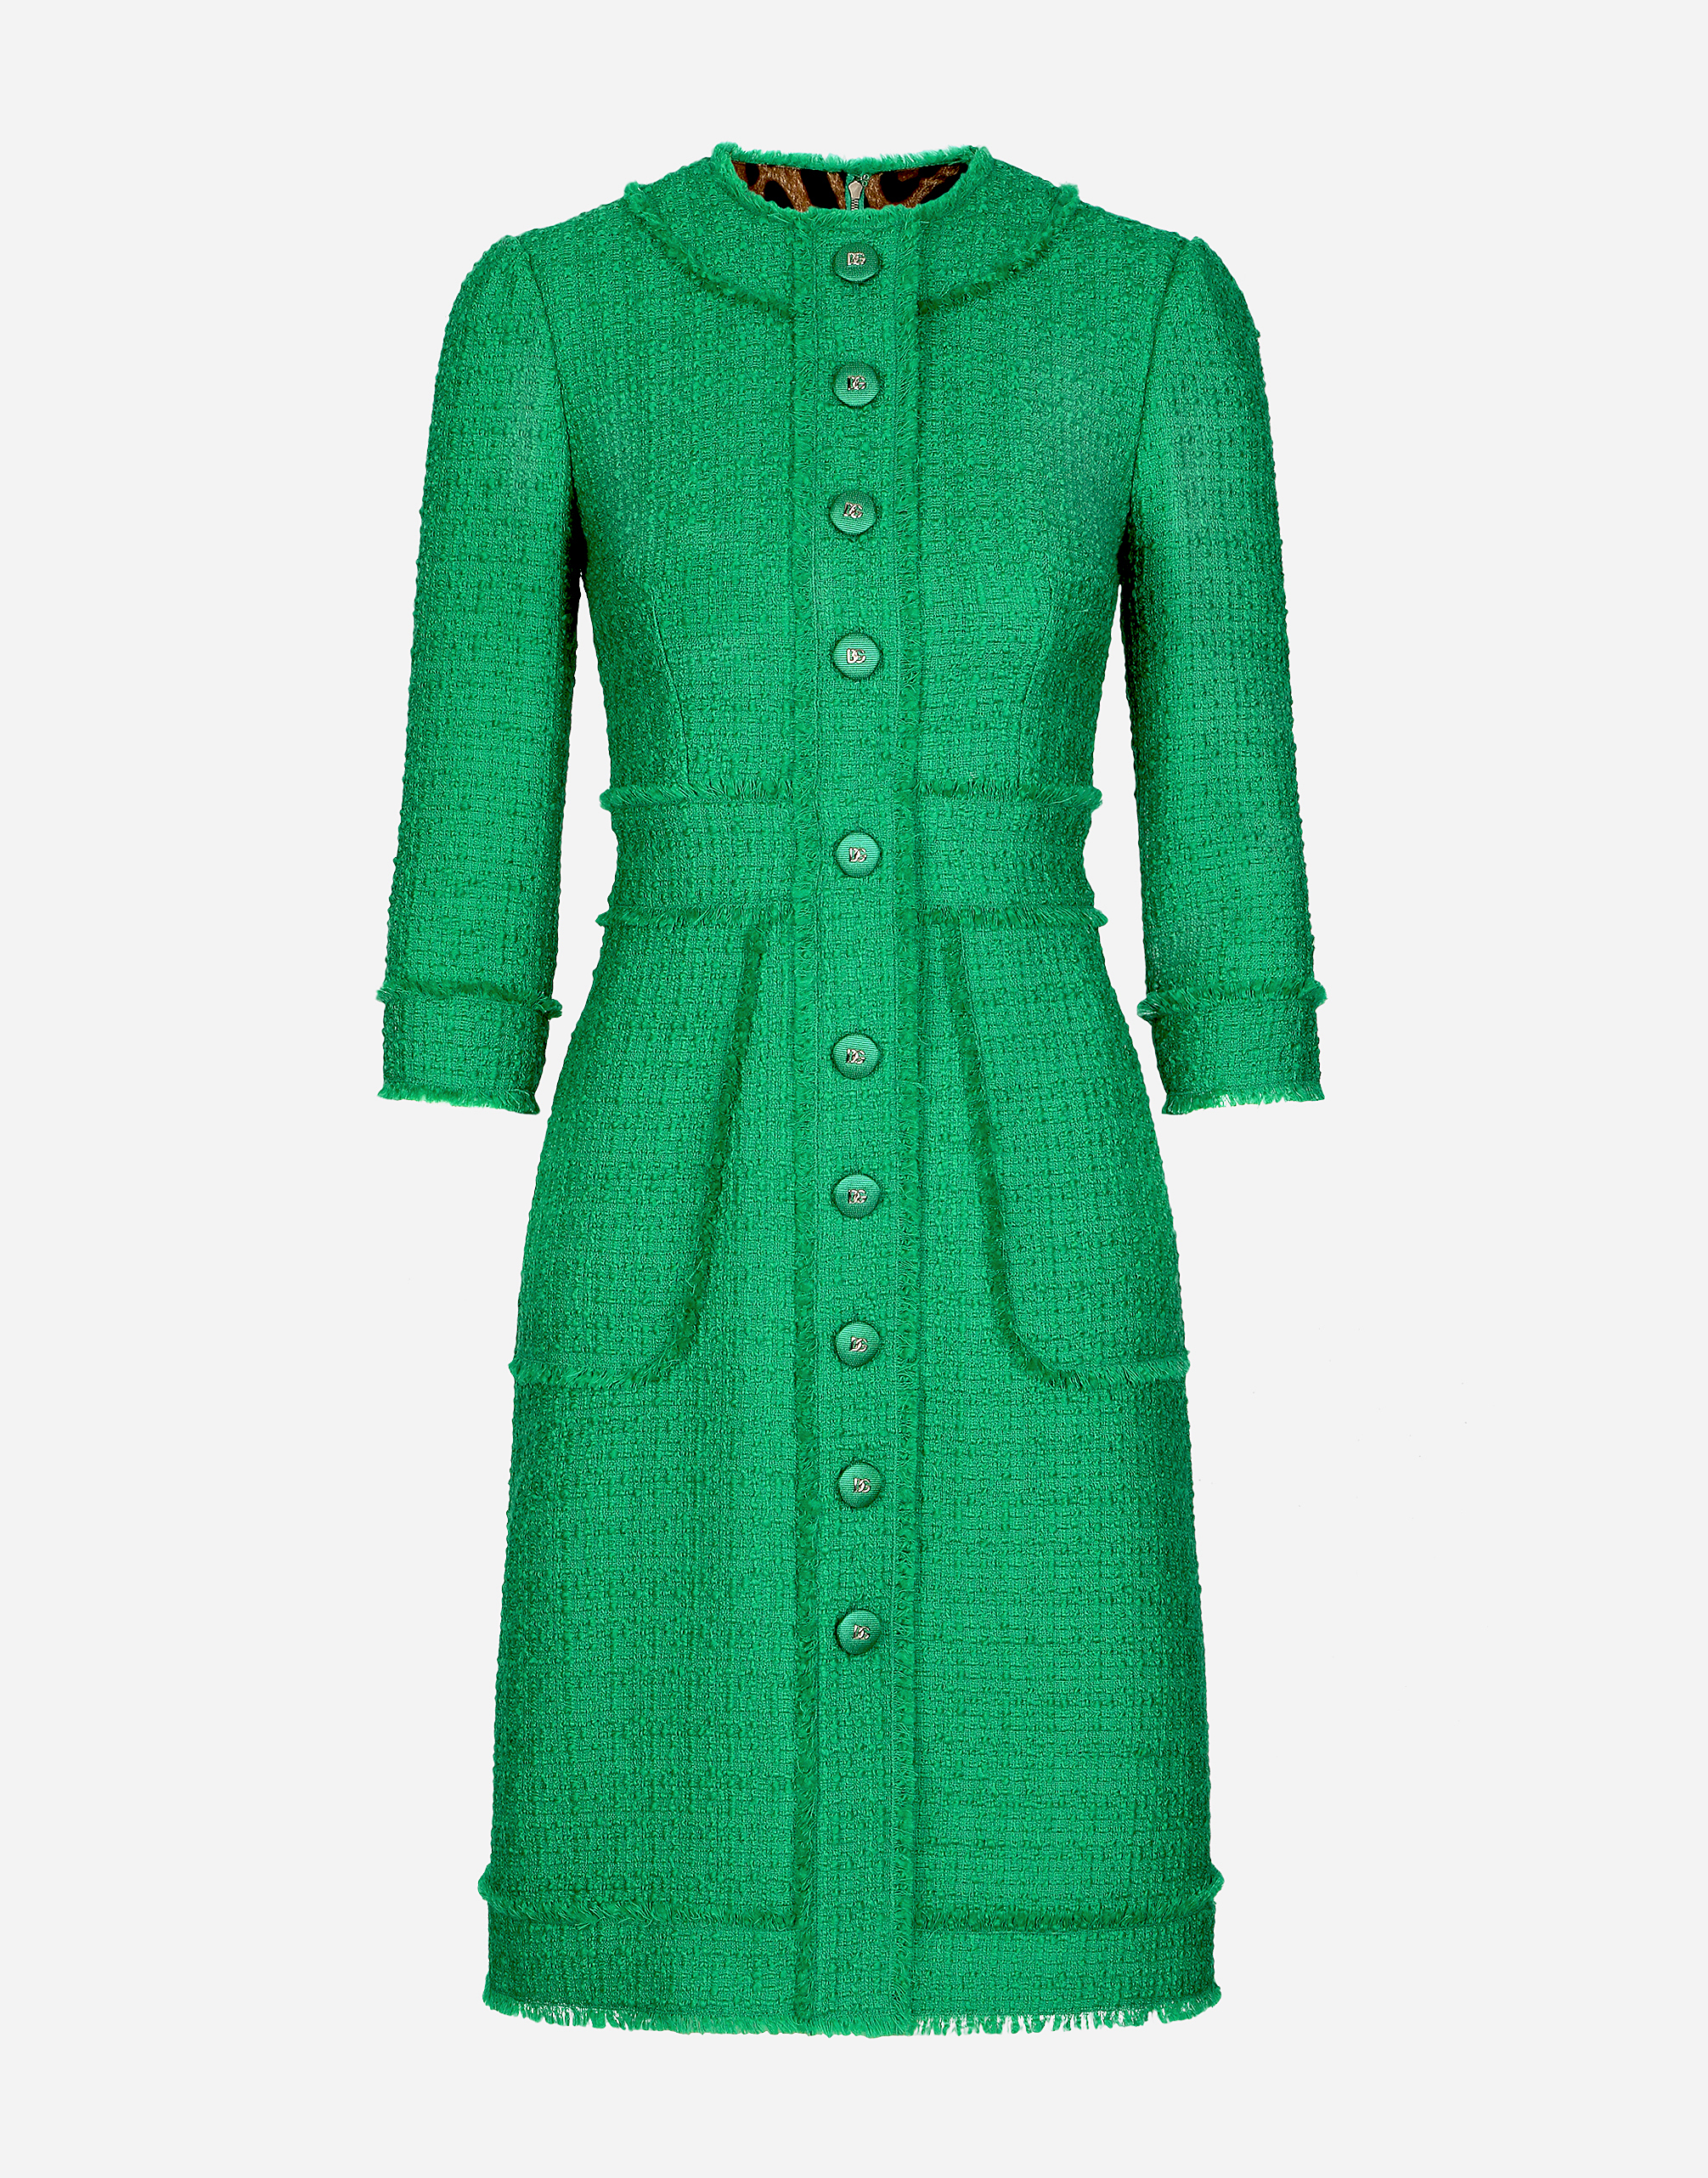 Raschel tweed midi dress in Green